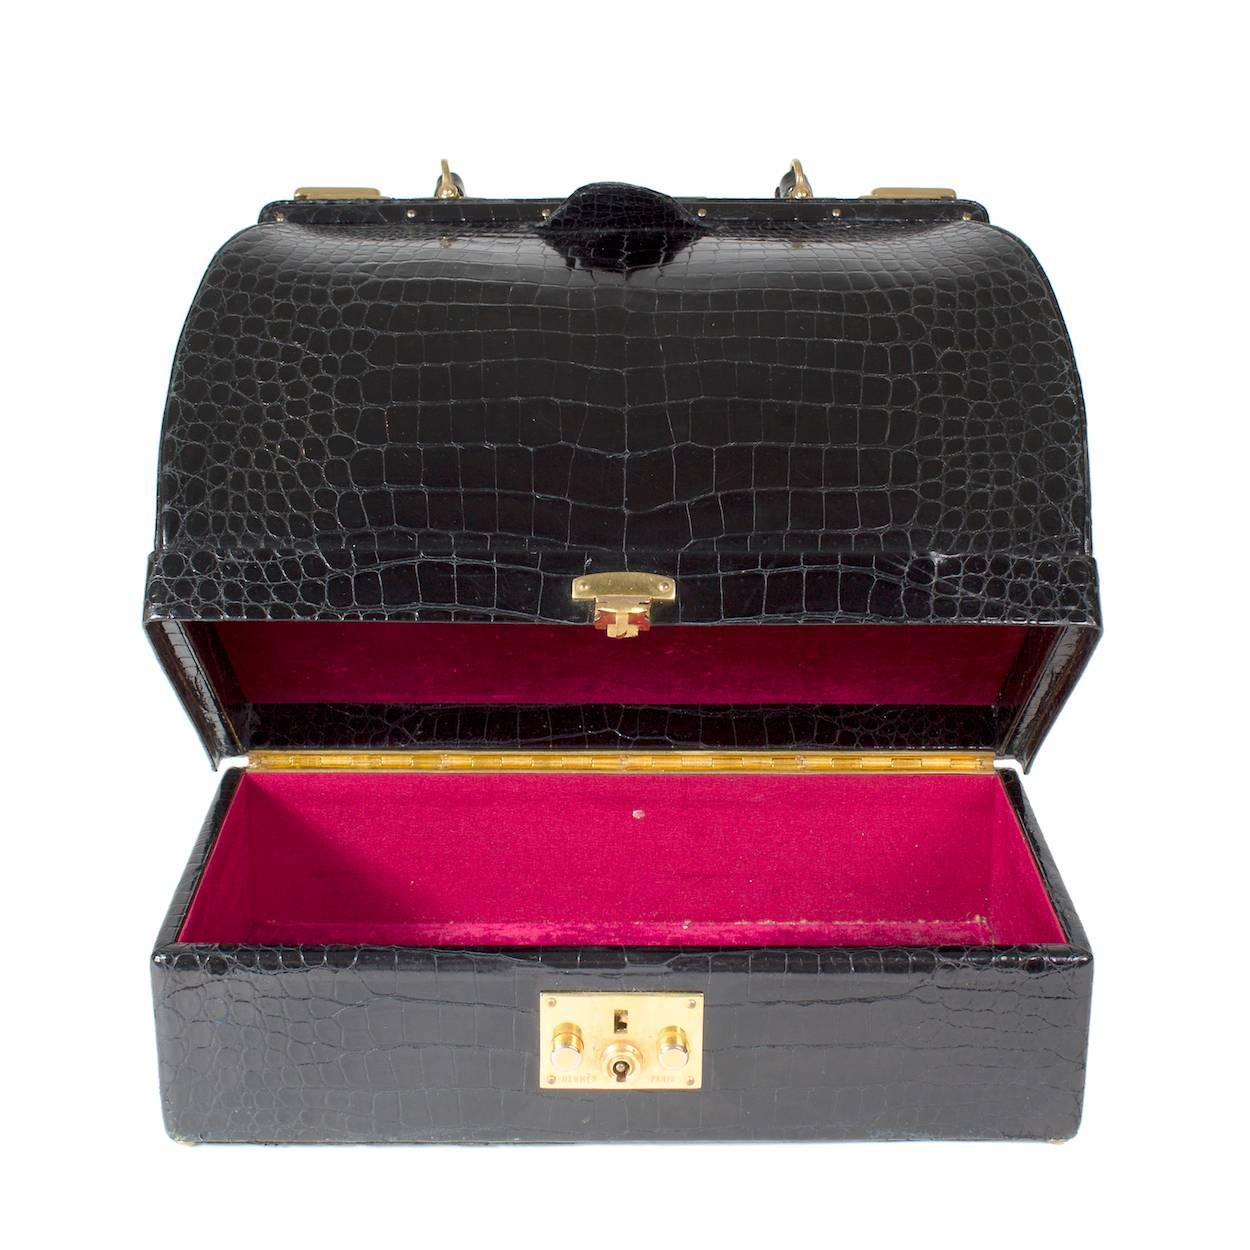 Il s'agit d'un sac Sac Mallette en croco d'Hermès c. années 1950/1960. C'est un sac de style docteur avec un compartiment à bijoux au fond. Il est doté de deux fermetures coulissantes supérieures:: d'une poignée supérieure et le compartiment